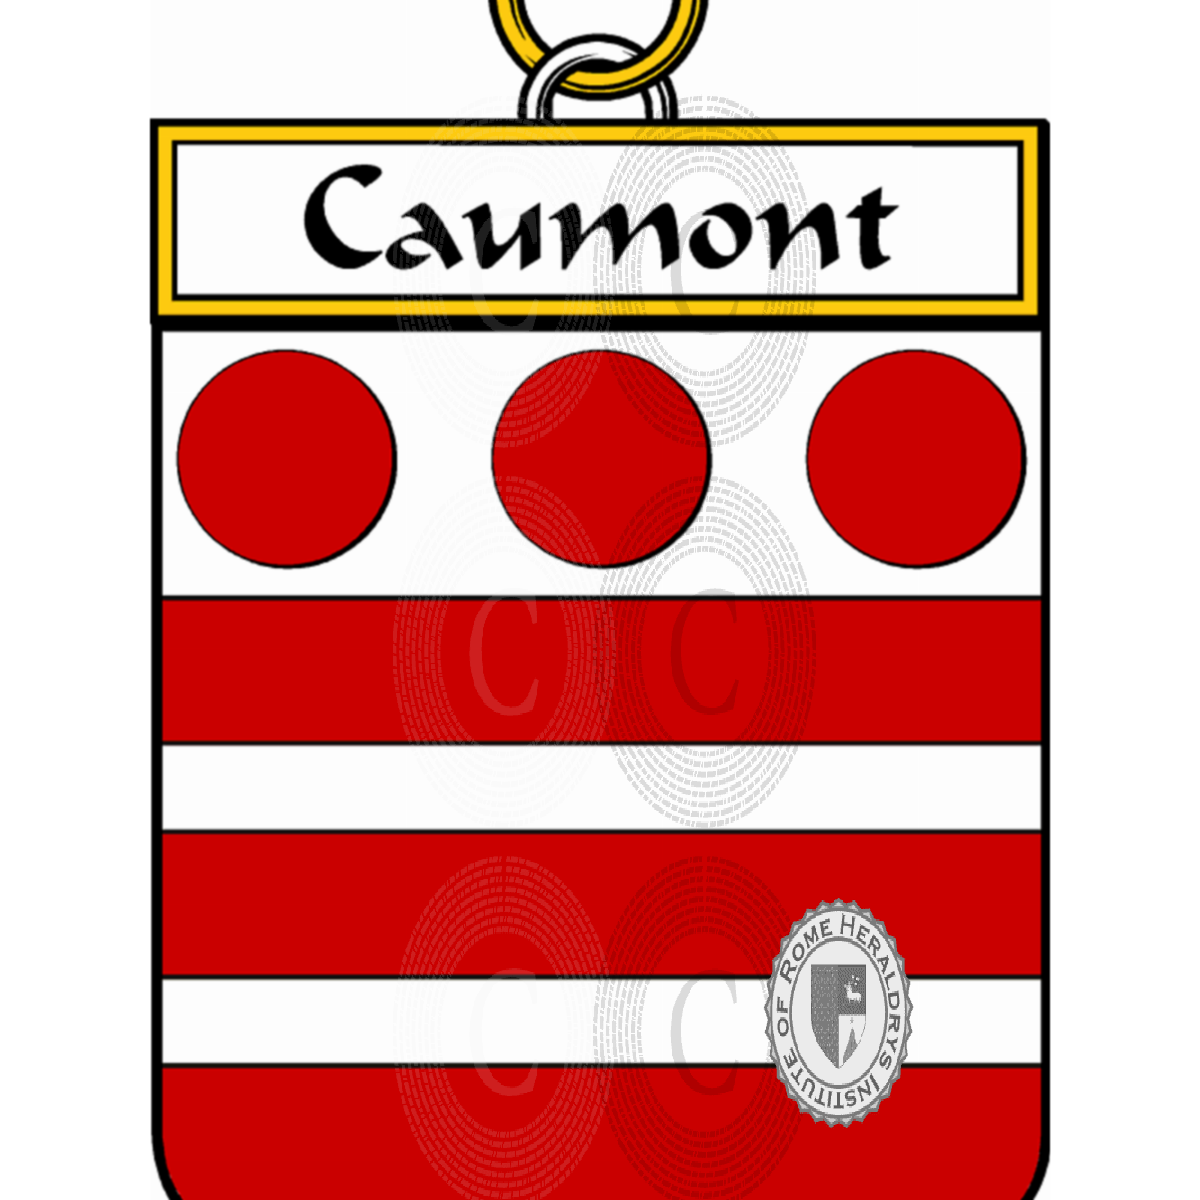 Stemma della famigliaCaumont, Caumon